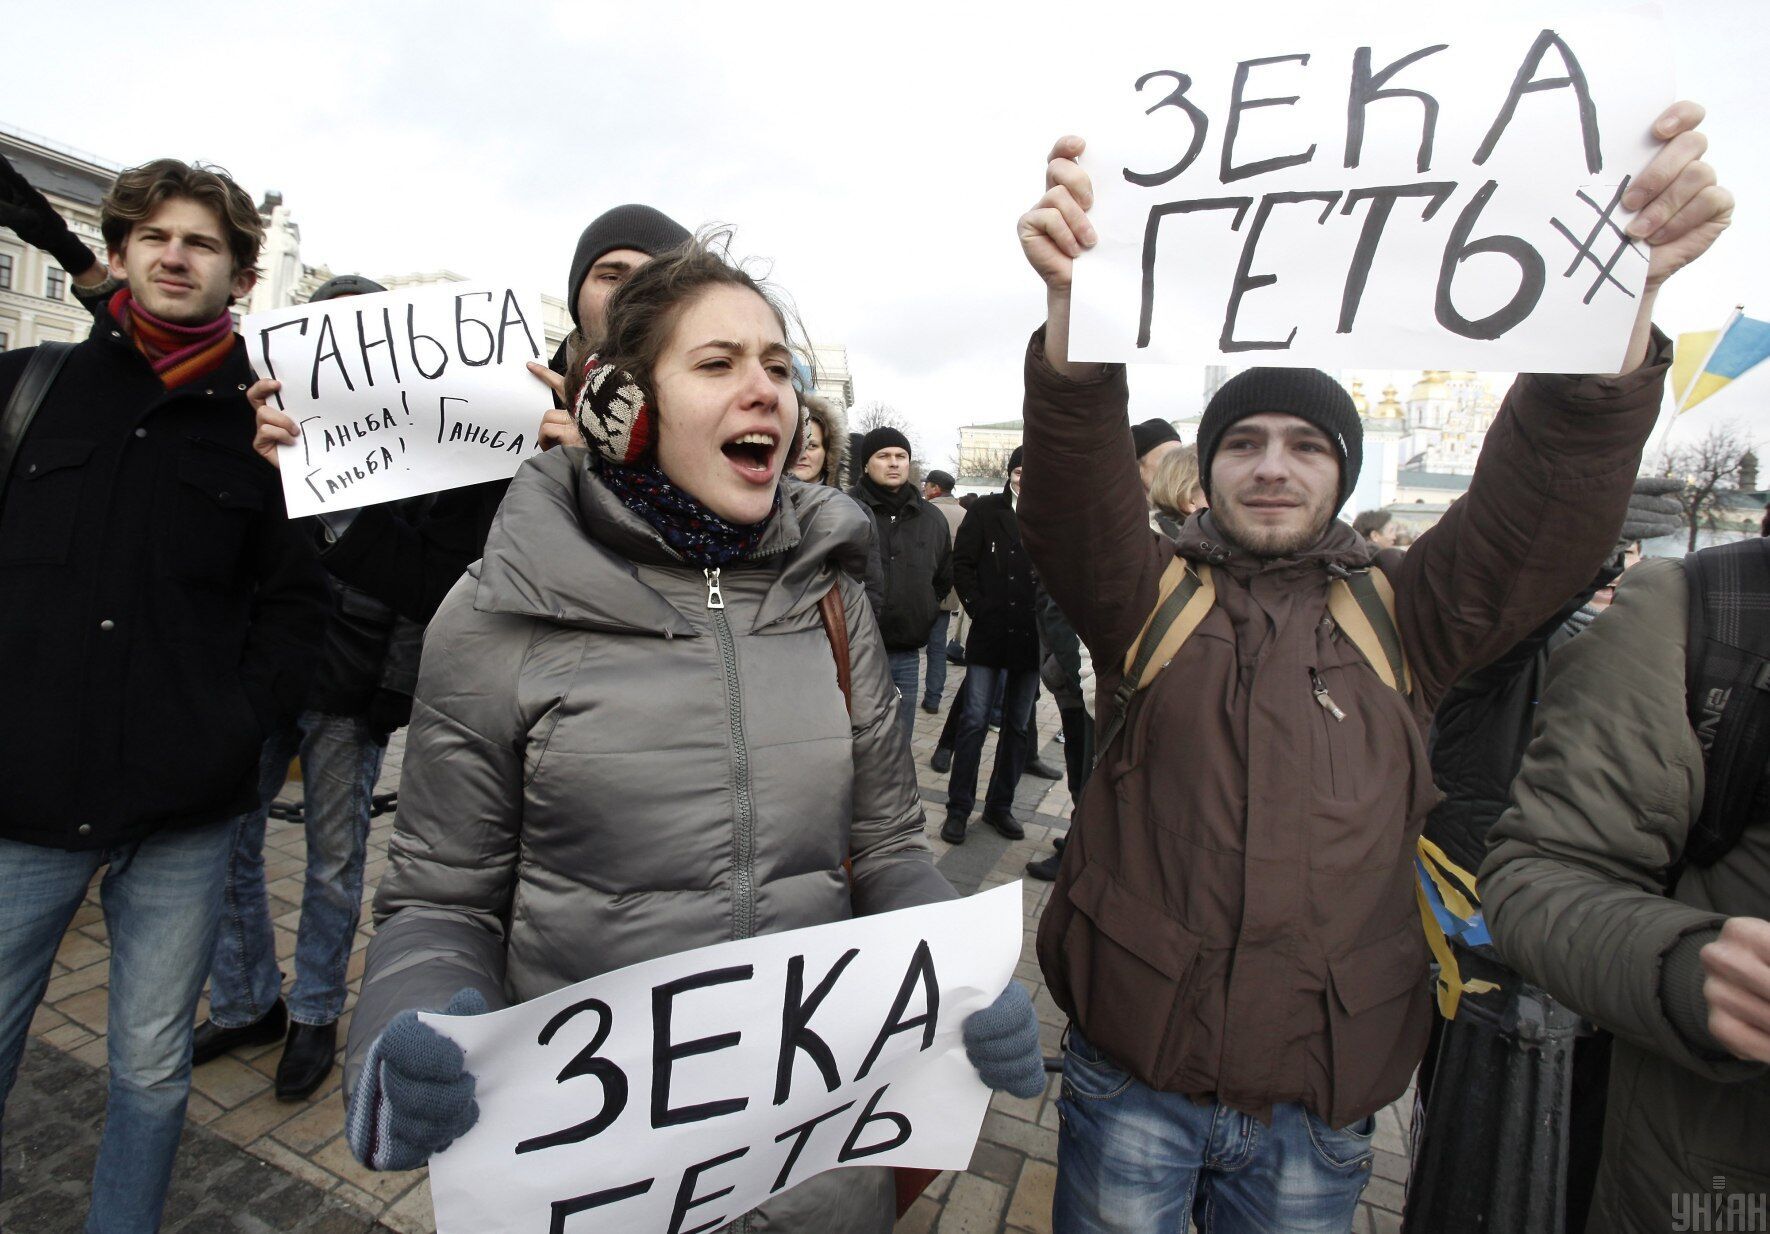 "Зека геть". Акция в поддержку евроинтеграции Украины на Михайловской площади в Киеве, 30 ноября 2013 года